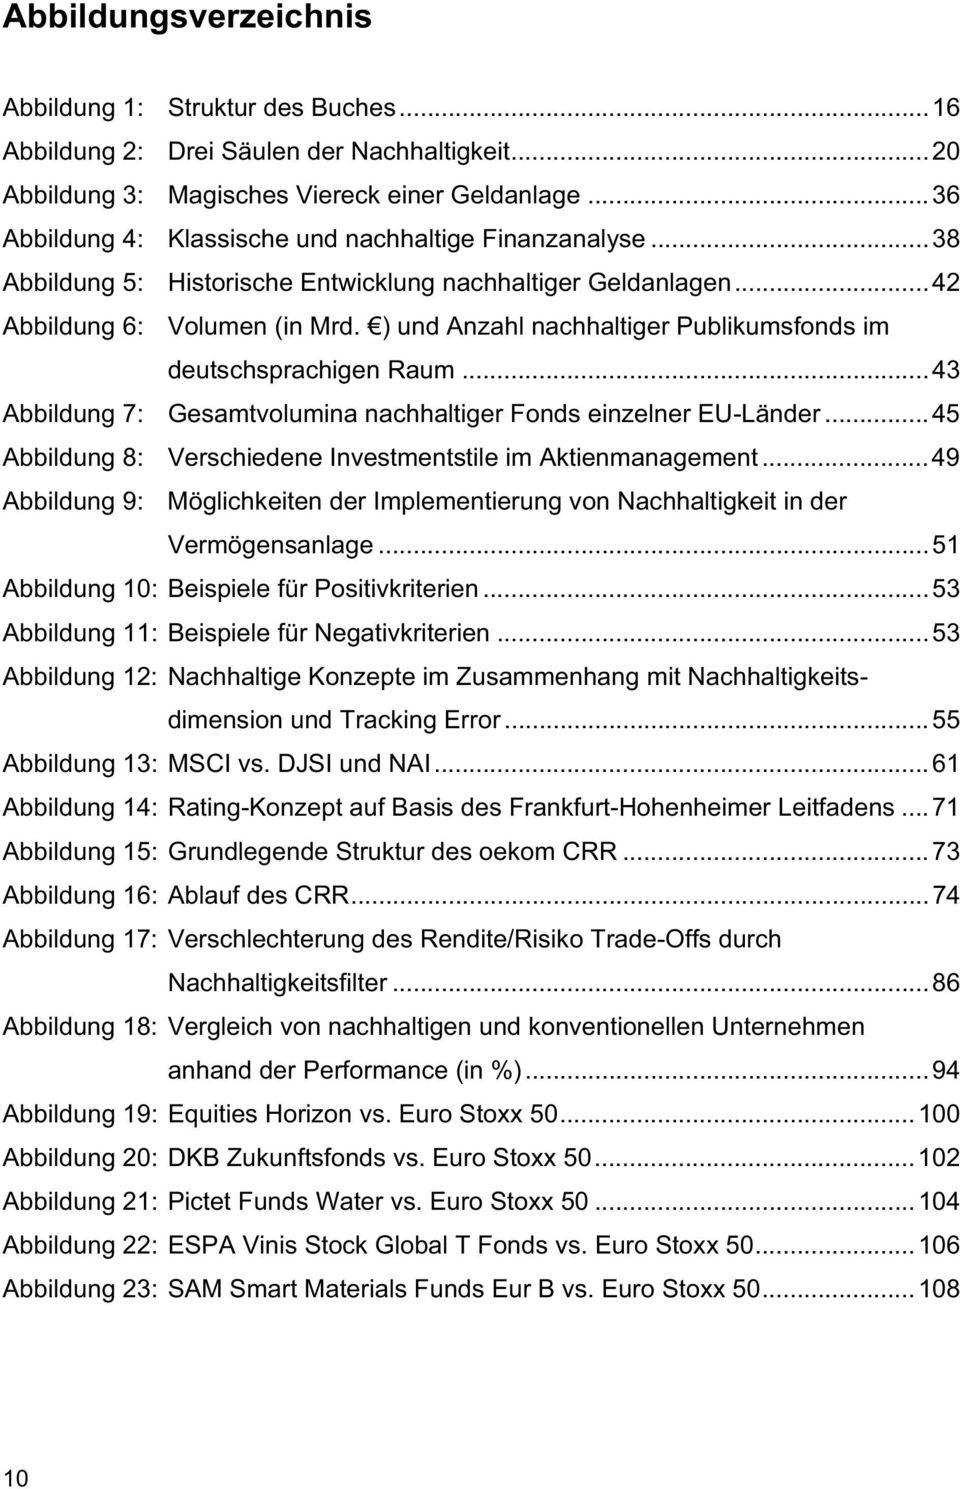 ) und Anzahl nachhaltiger Publikumsfonds im deutschsprachigen Raum...43 Abbildung 7: Gesamtvolumina nachhaltiger Fonds einzelner EU-Länder.